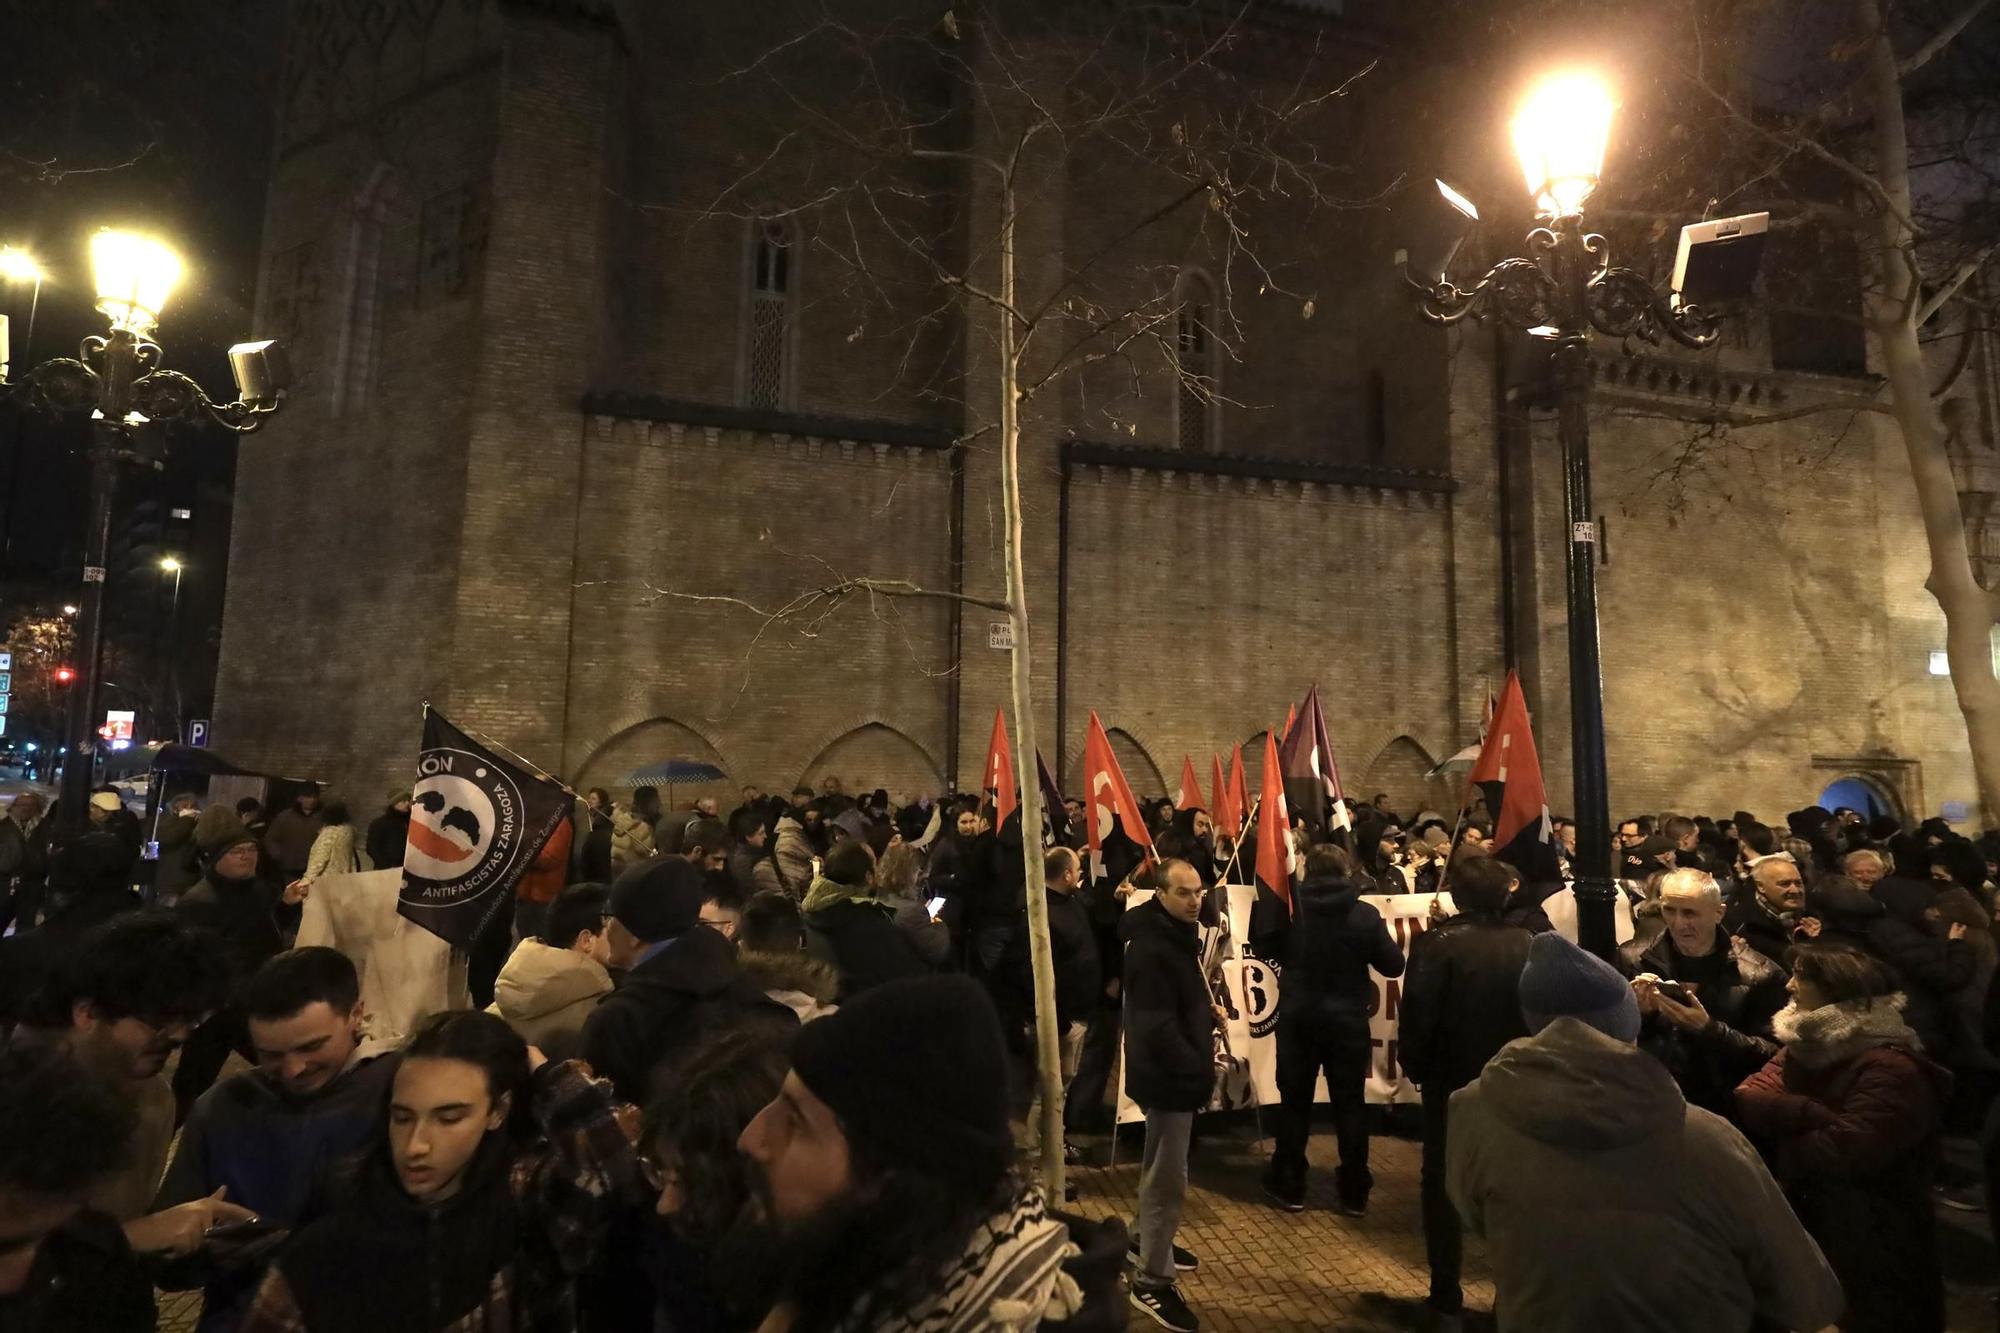 En imágenes | Manifestación por la absolución de los 6 de Zaragoza